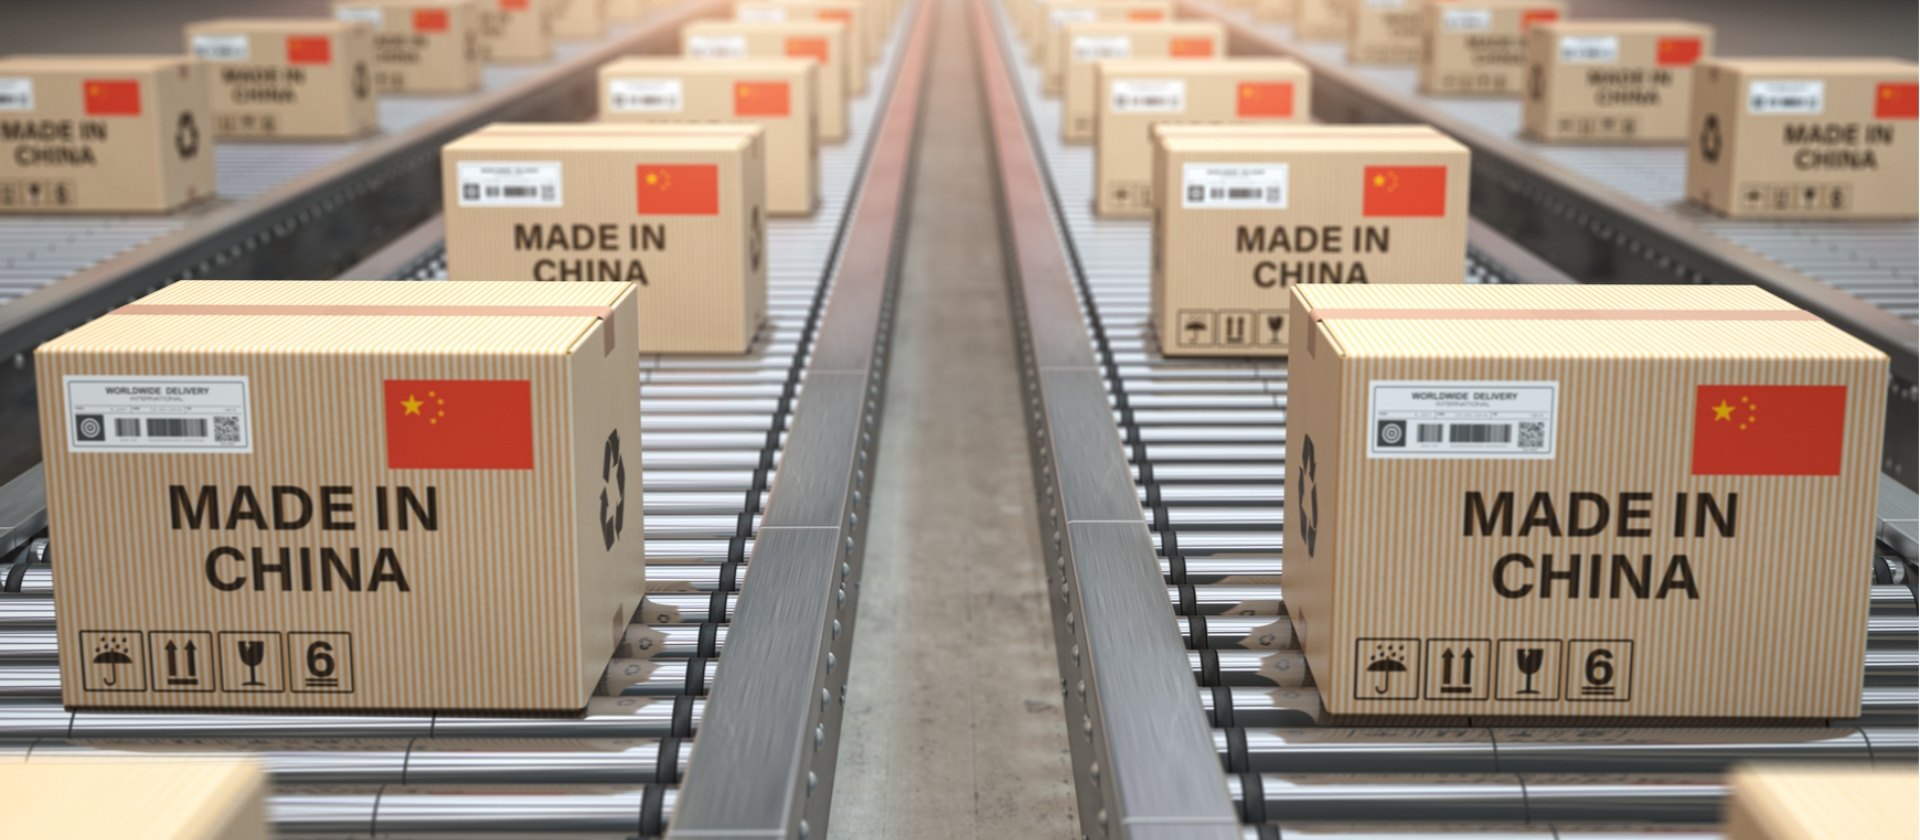 標有中國製造的盒子正在輸送機上輸送。